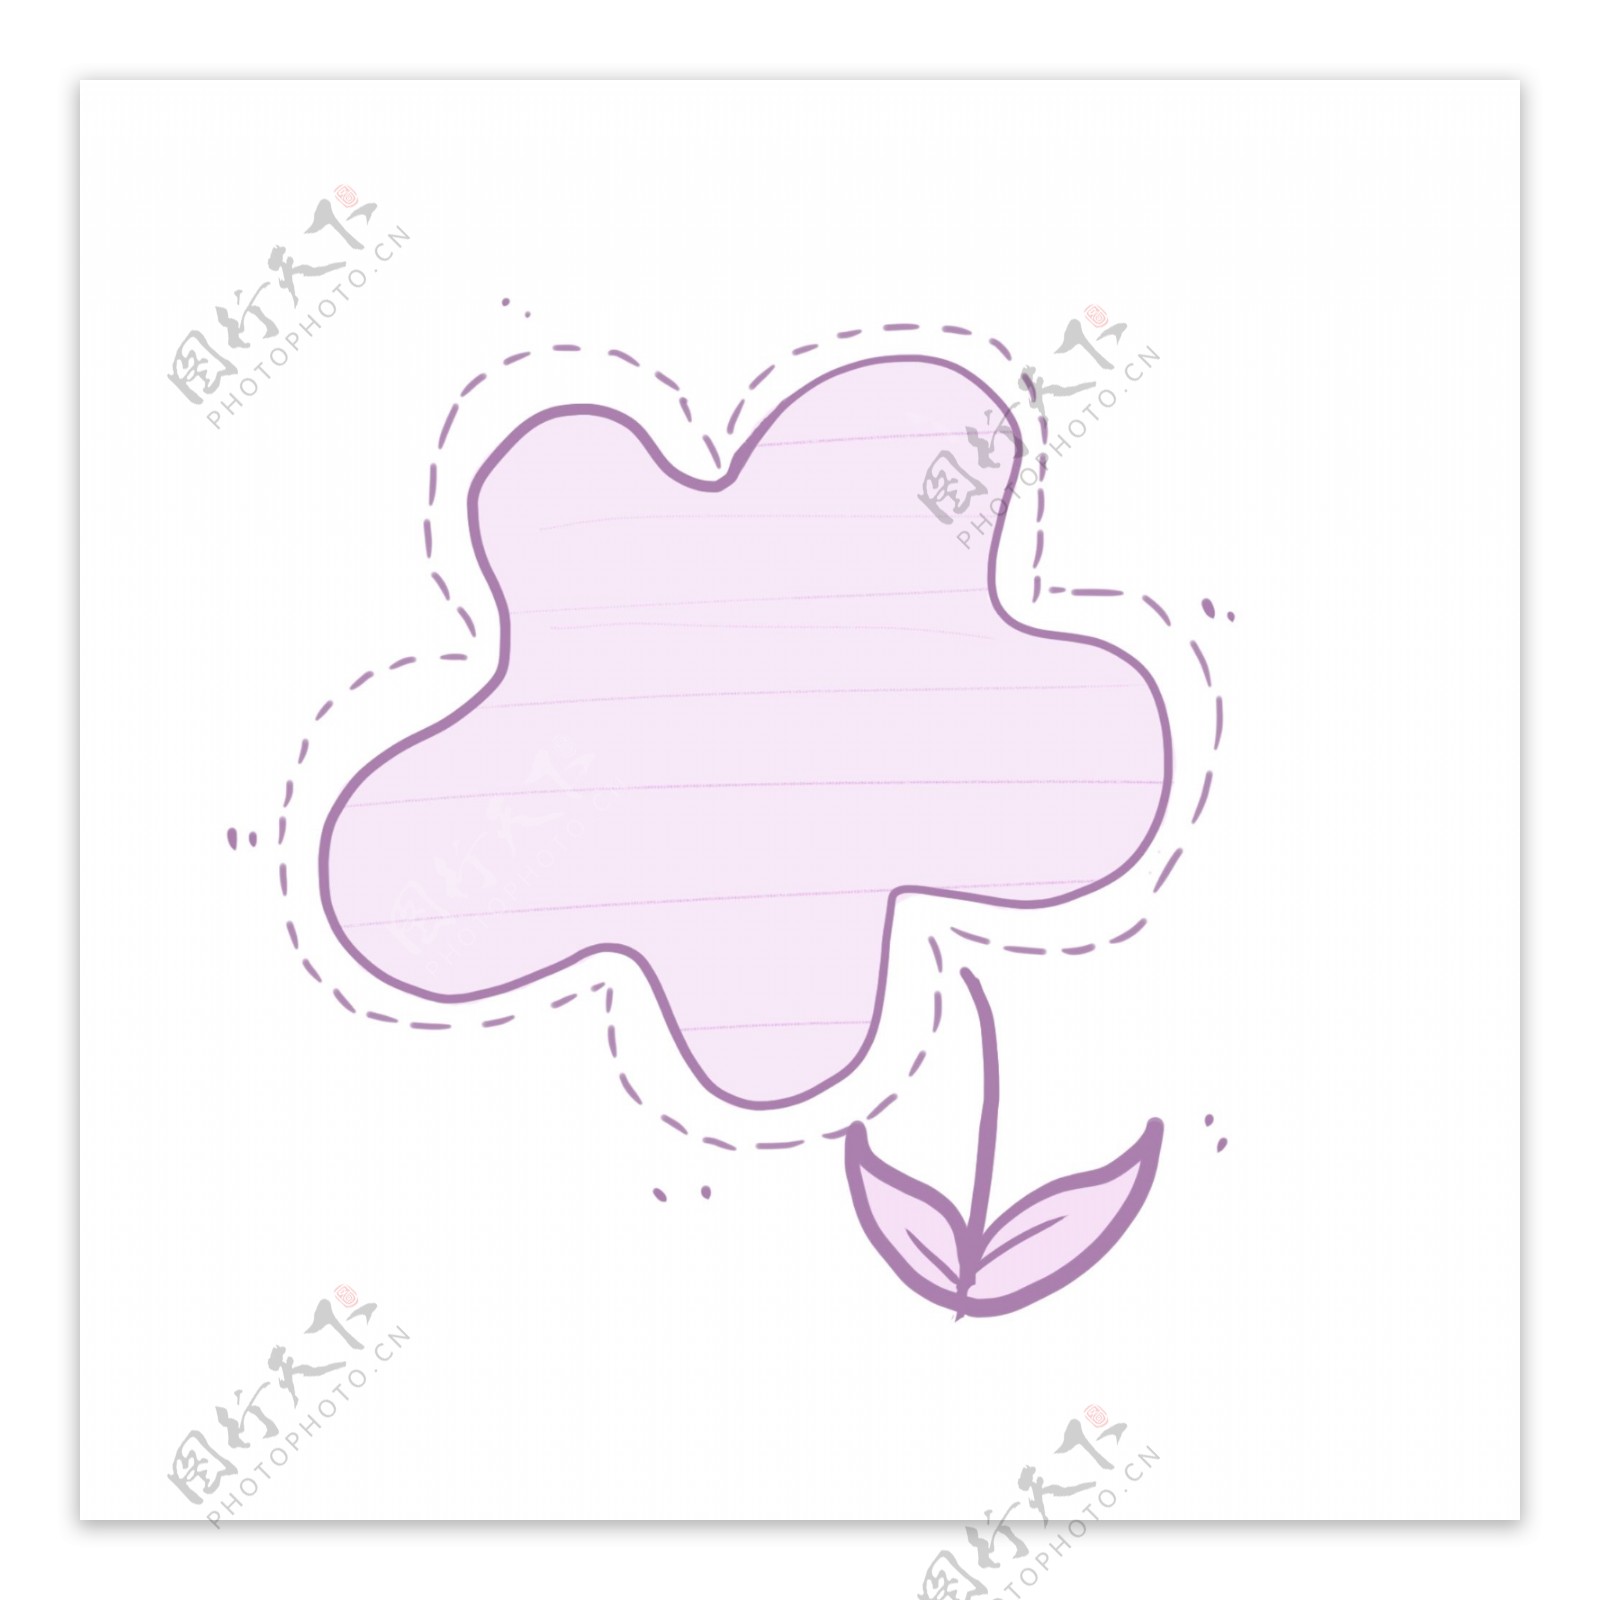 手绘手帐元素紫色花朵对话框装饰图案